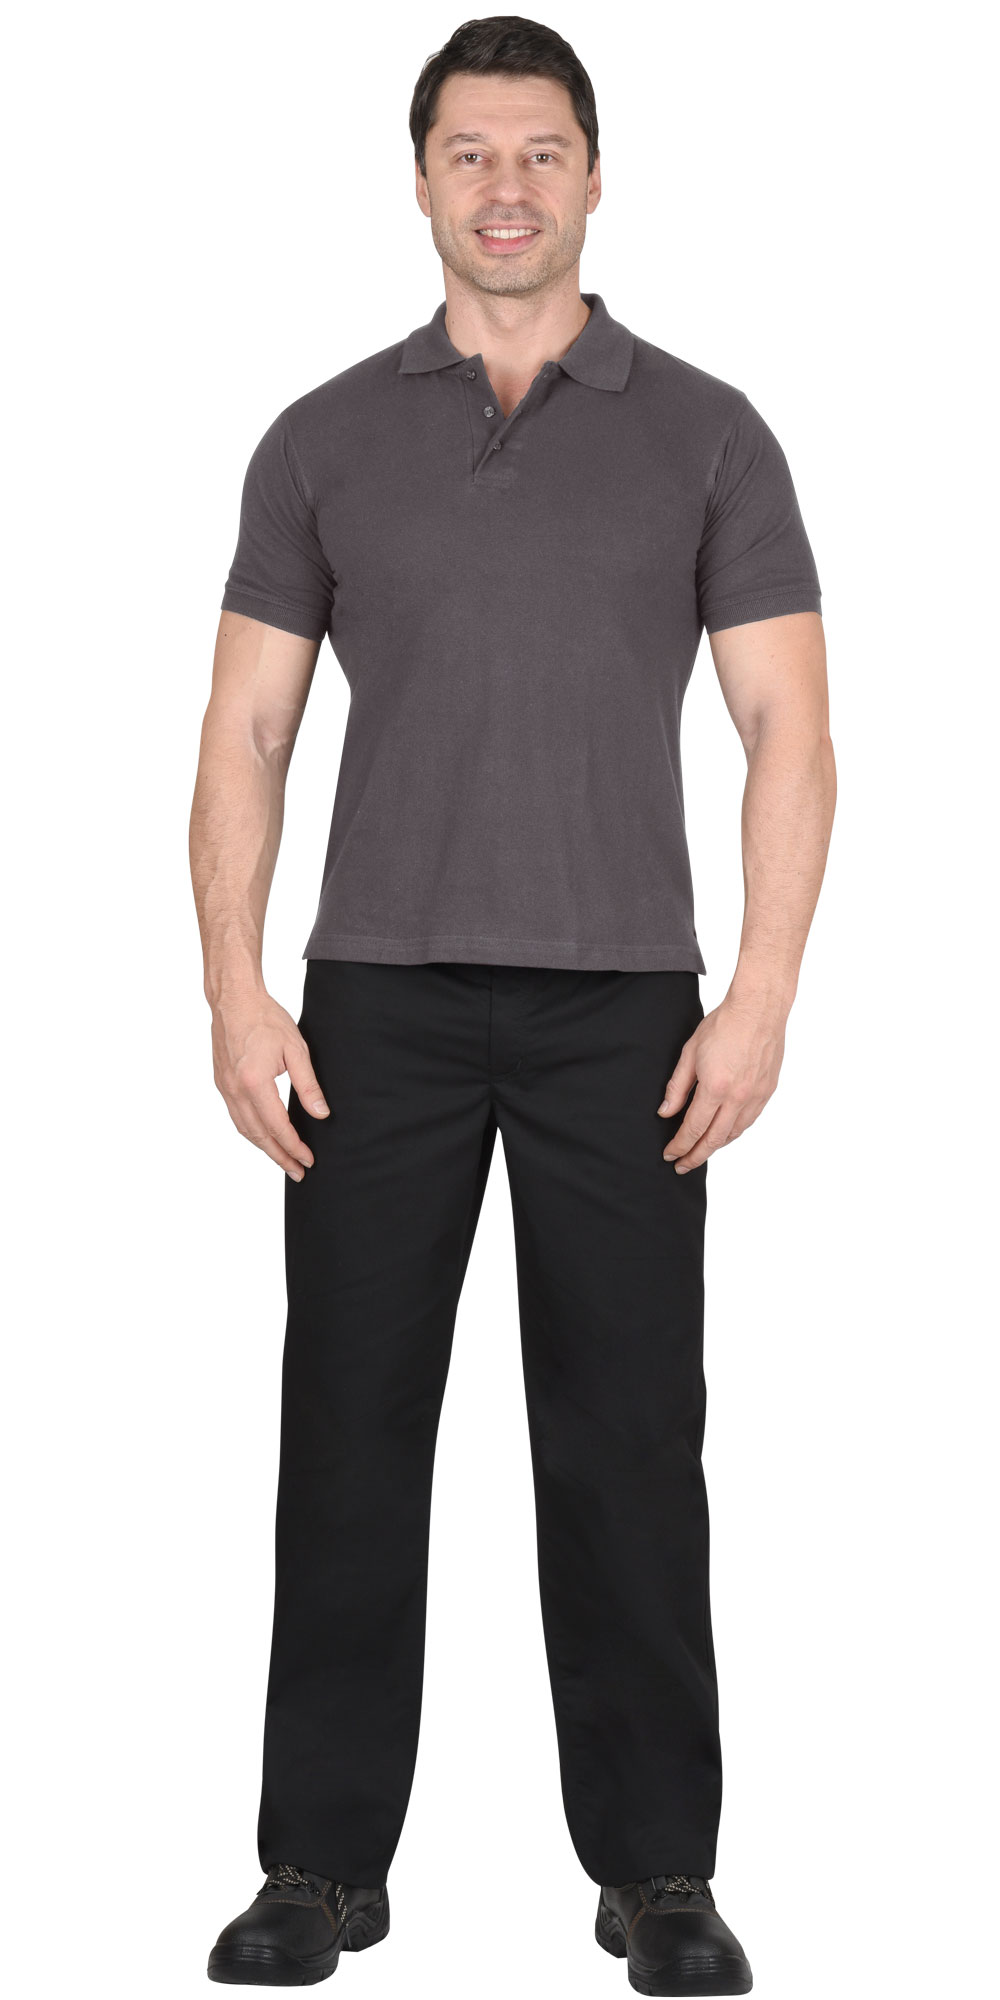 Рубашка-поло мужская, рукав короткий, цвет: серый, плотность 180г/кв.м